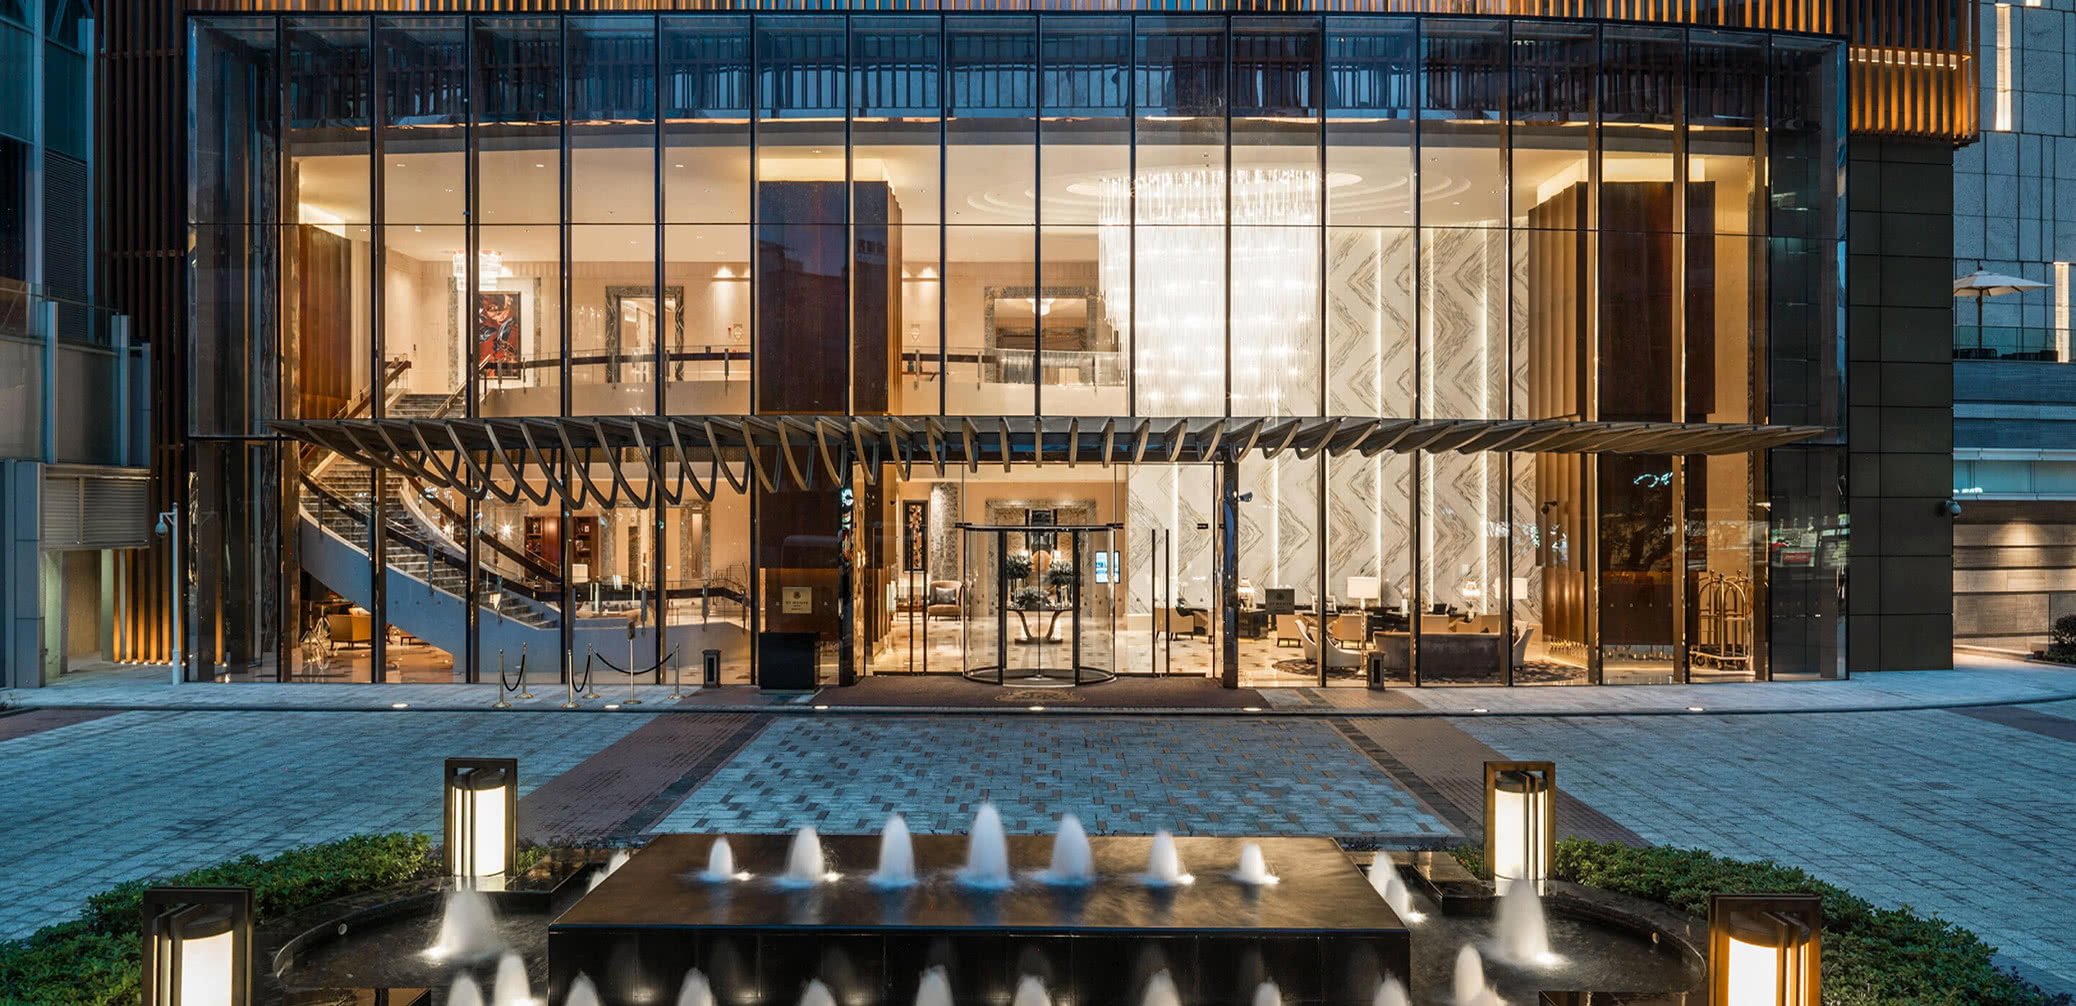 Best Bonvoy Hotel In Chengdu: Marriott Vs St Regis, Ritz-Carlton Vs Sheraton